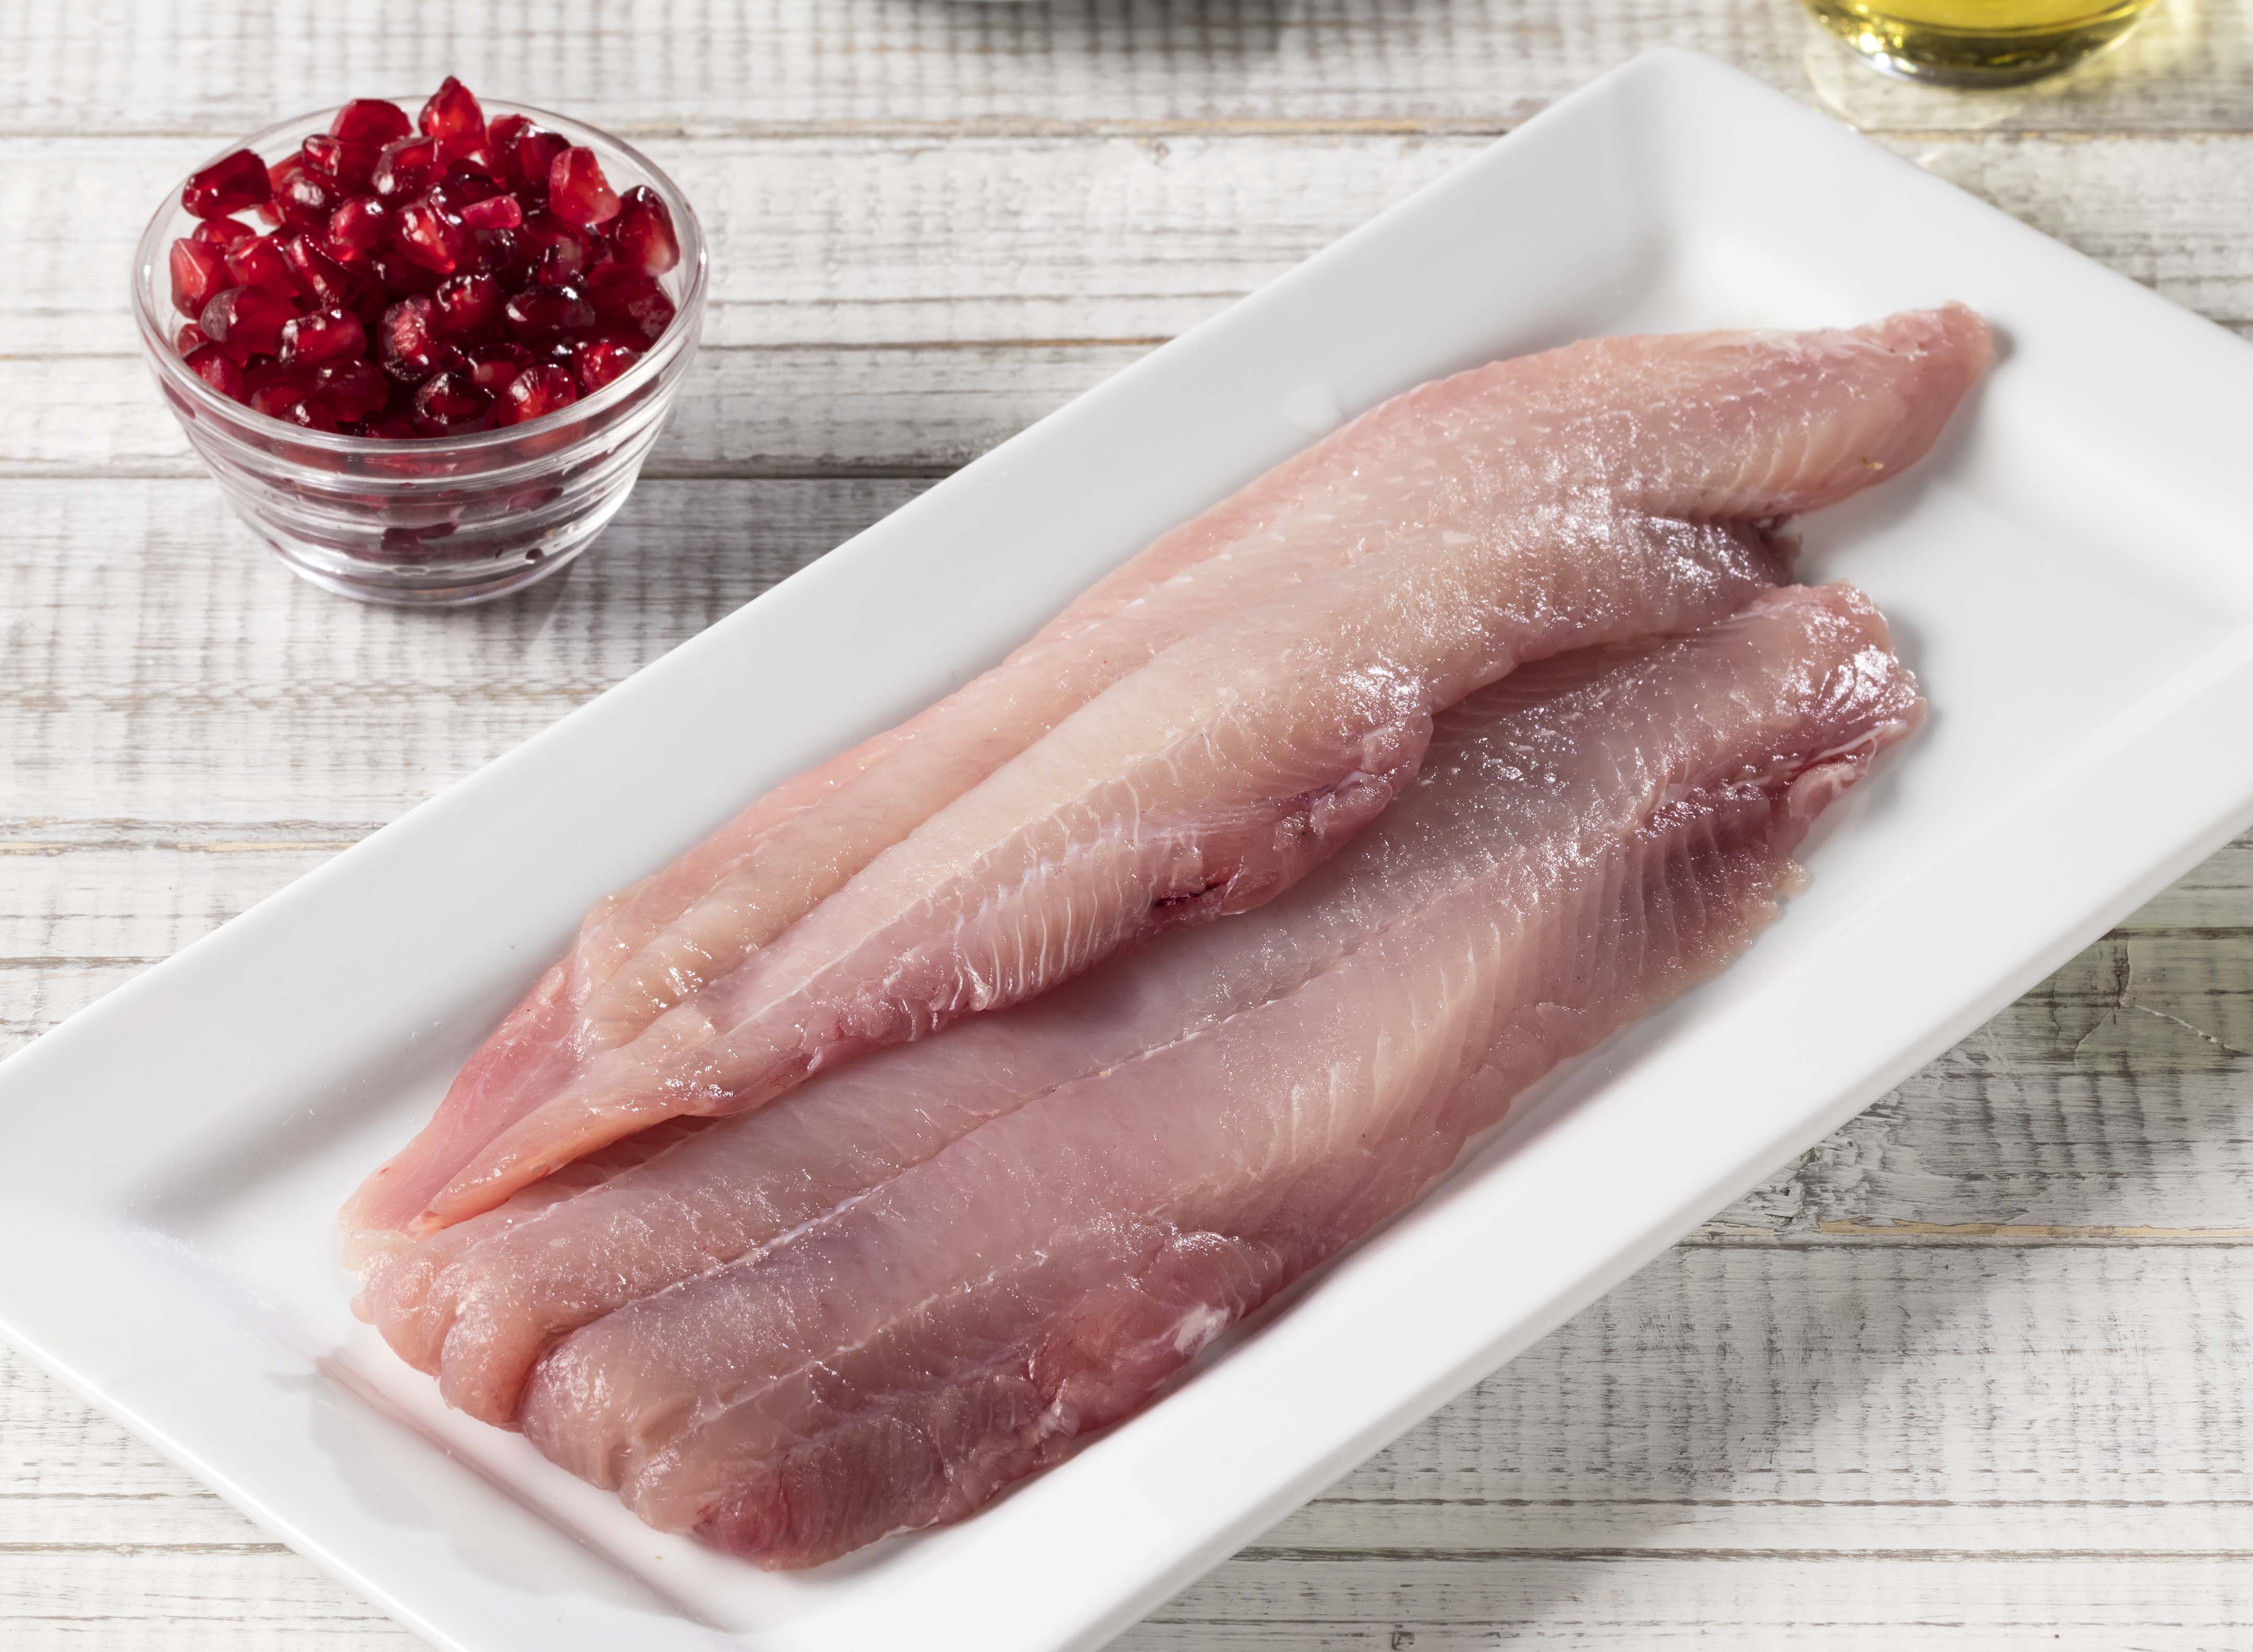 La carpa es un pescado que debe almacenarse a temperaturas menores de 5 grados centígrados para conservarlo en óptimas condiciones para su consumo.